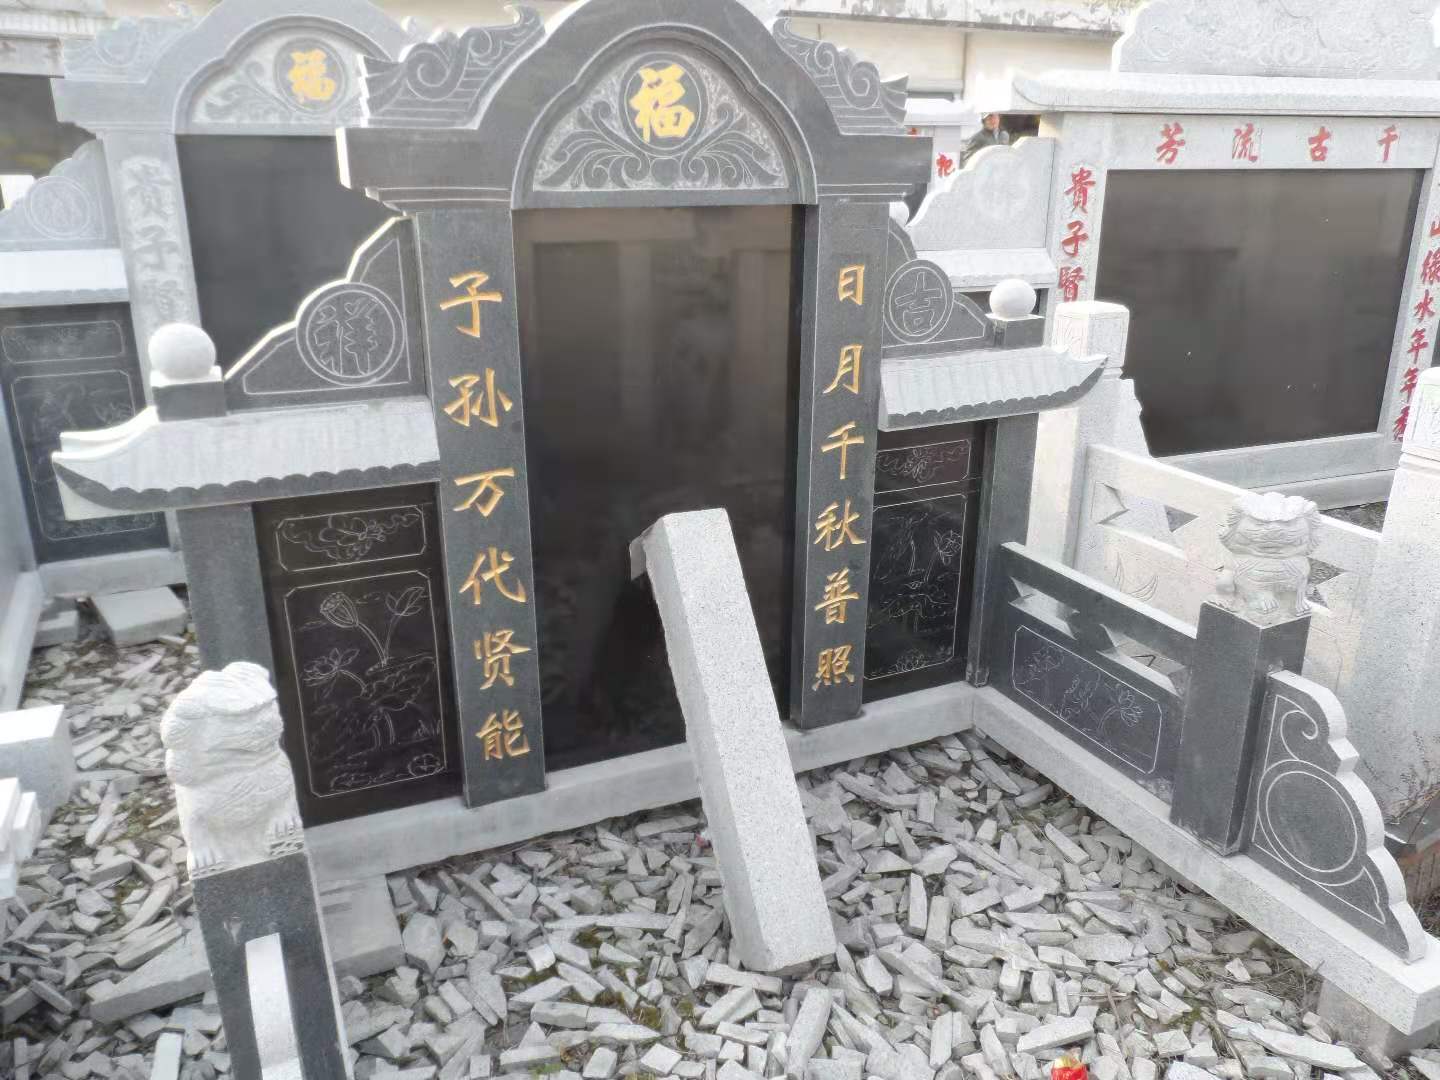 上海市上海石碑专业雕刻厂家厂家上海石碑专业雕刻厂家 供应商  定做  哪家好